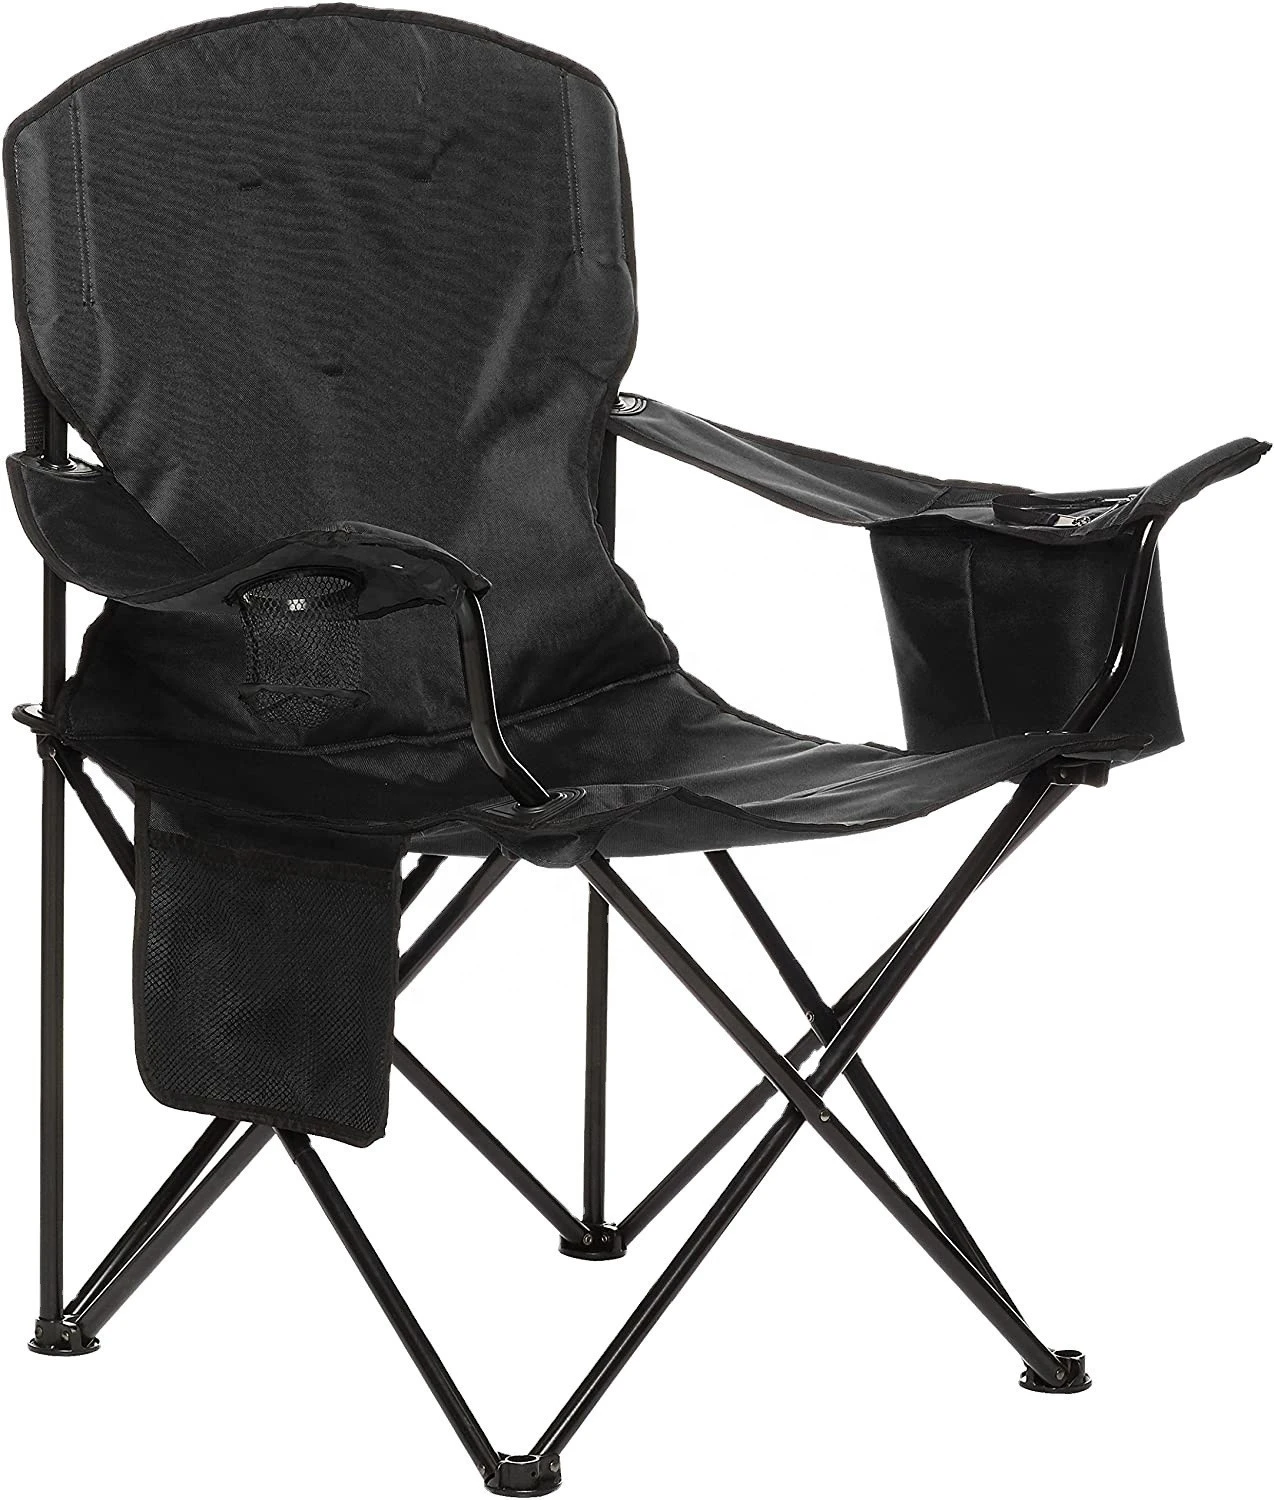 Woqi 2020 High-grade Outdoor Recliner Lightweight Folding Ultralight  Beach Camping Chair